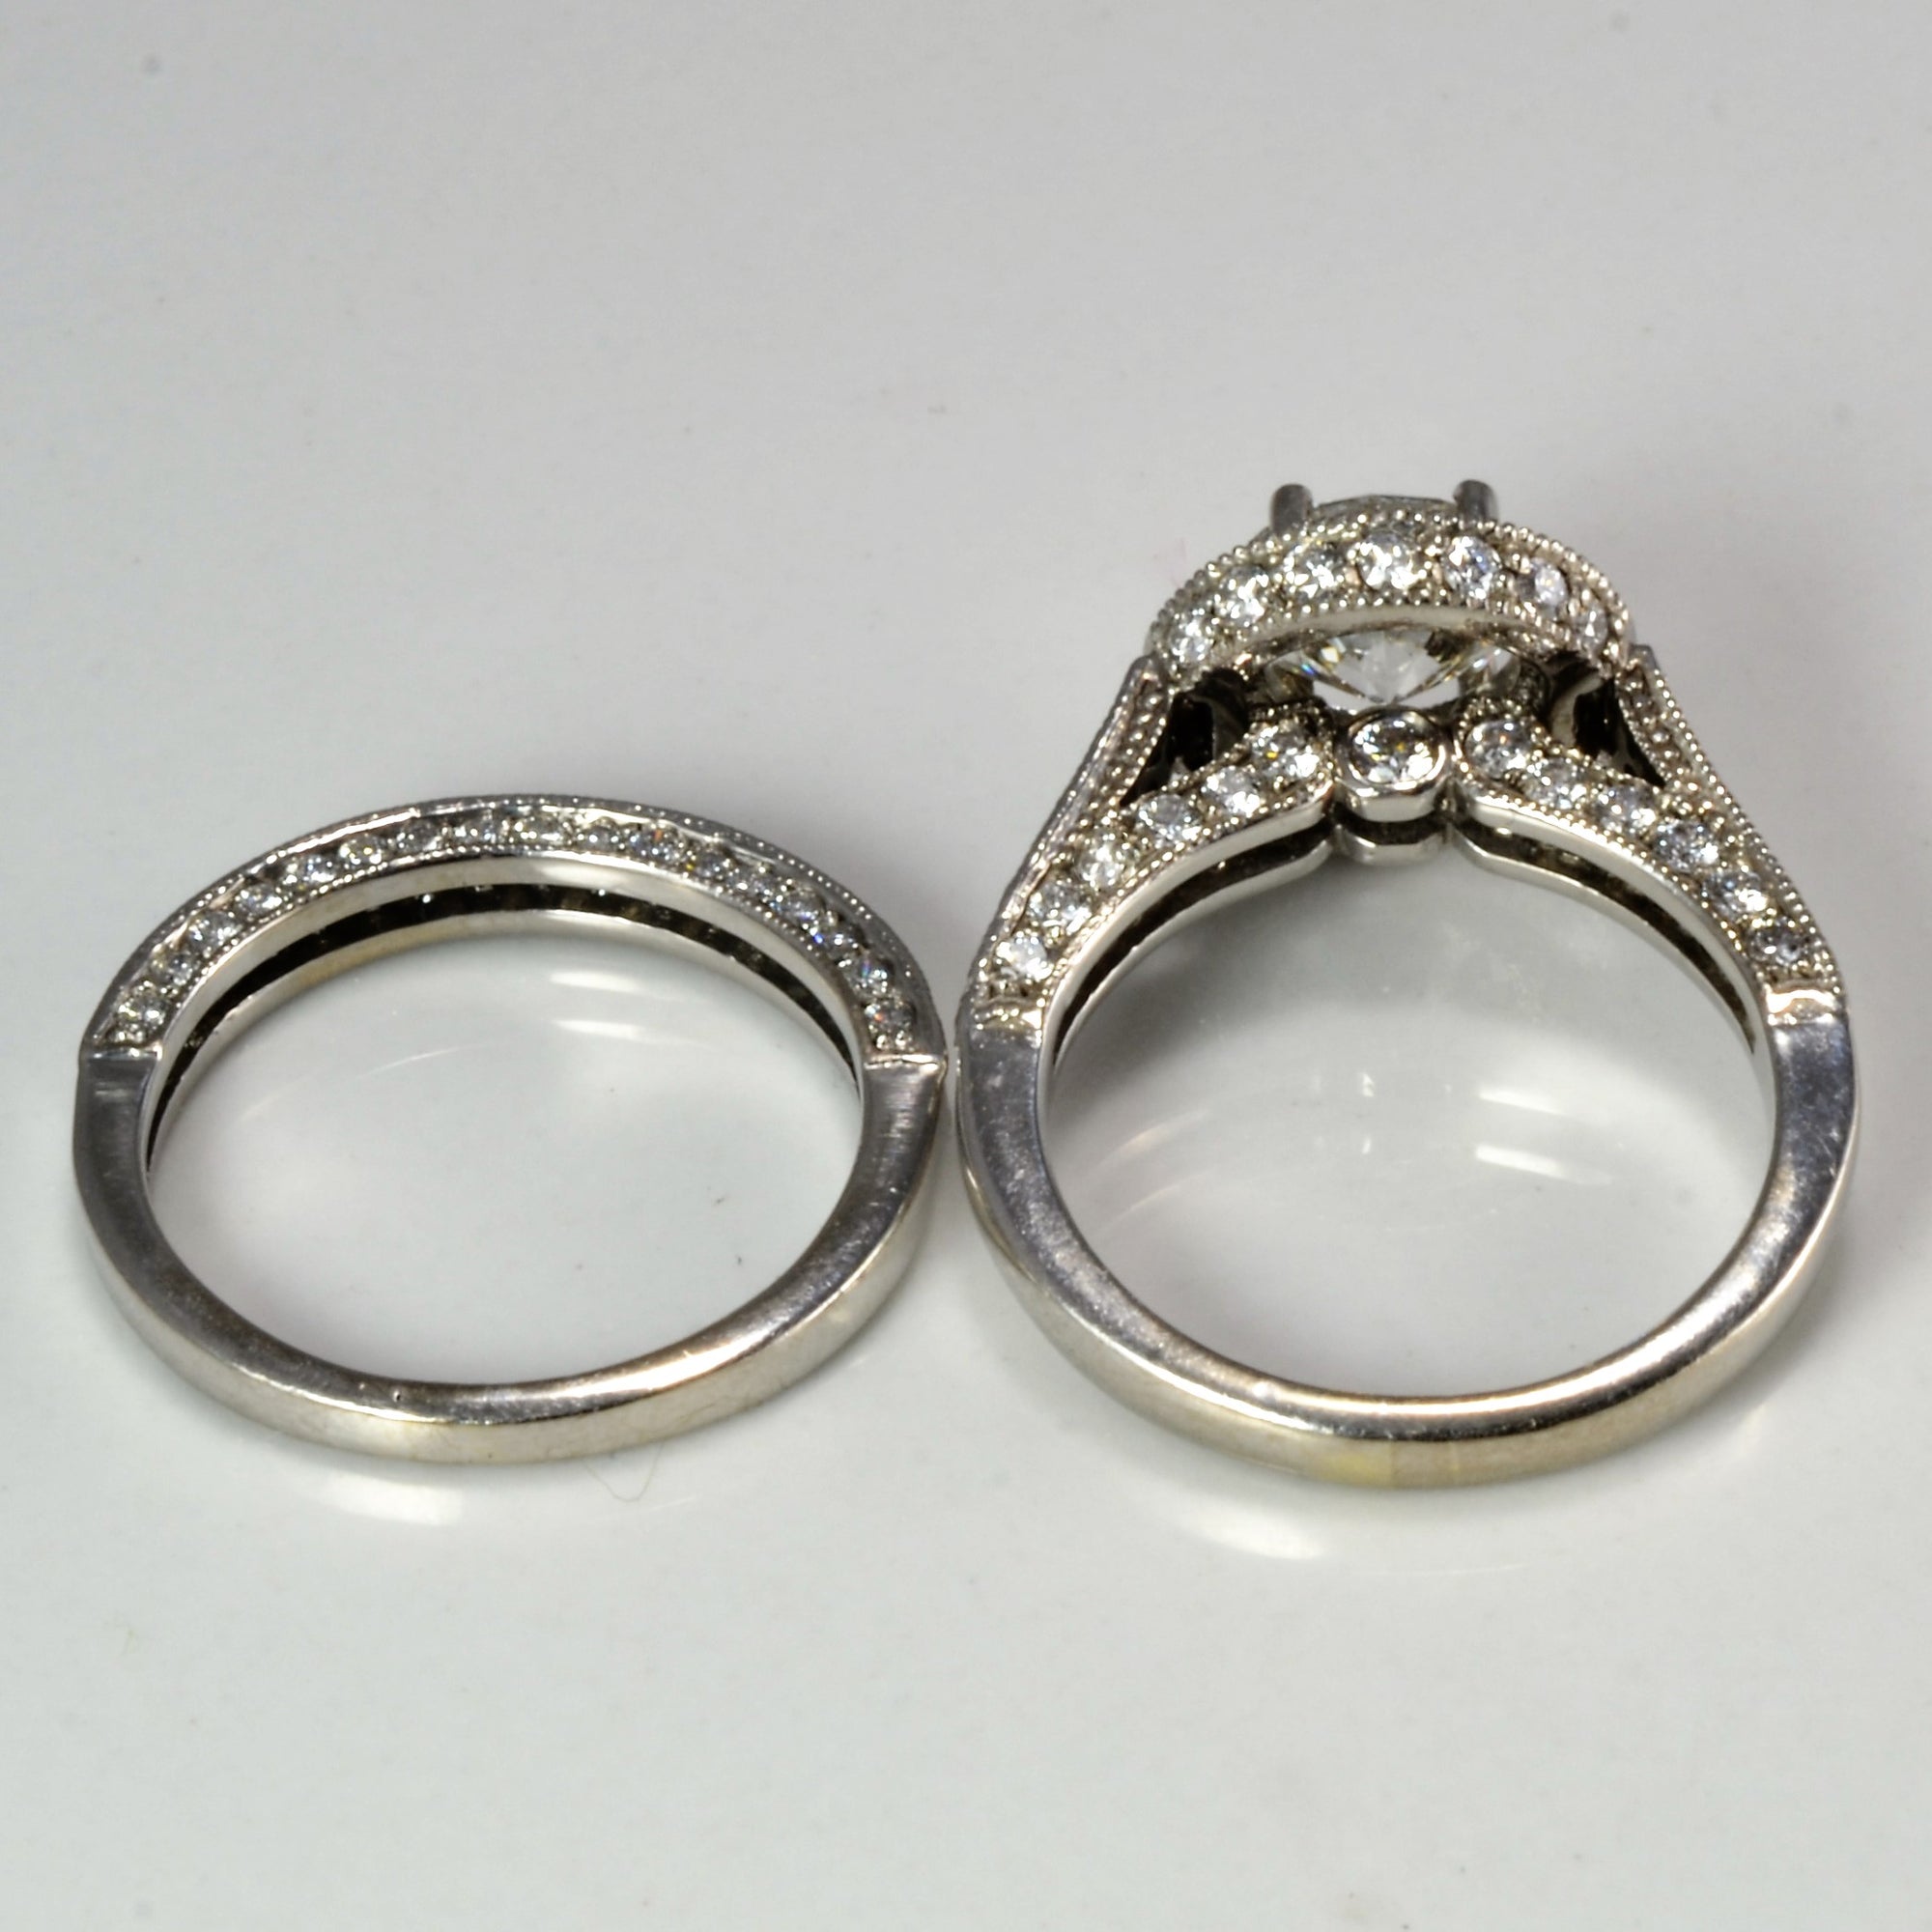 Halo Diamond Engagement Ring & Wedding Band Set | 1.86 ctw, SZ 3.5 |